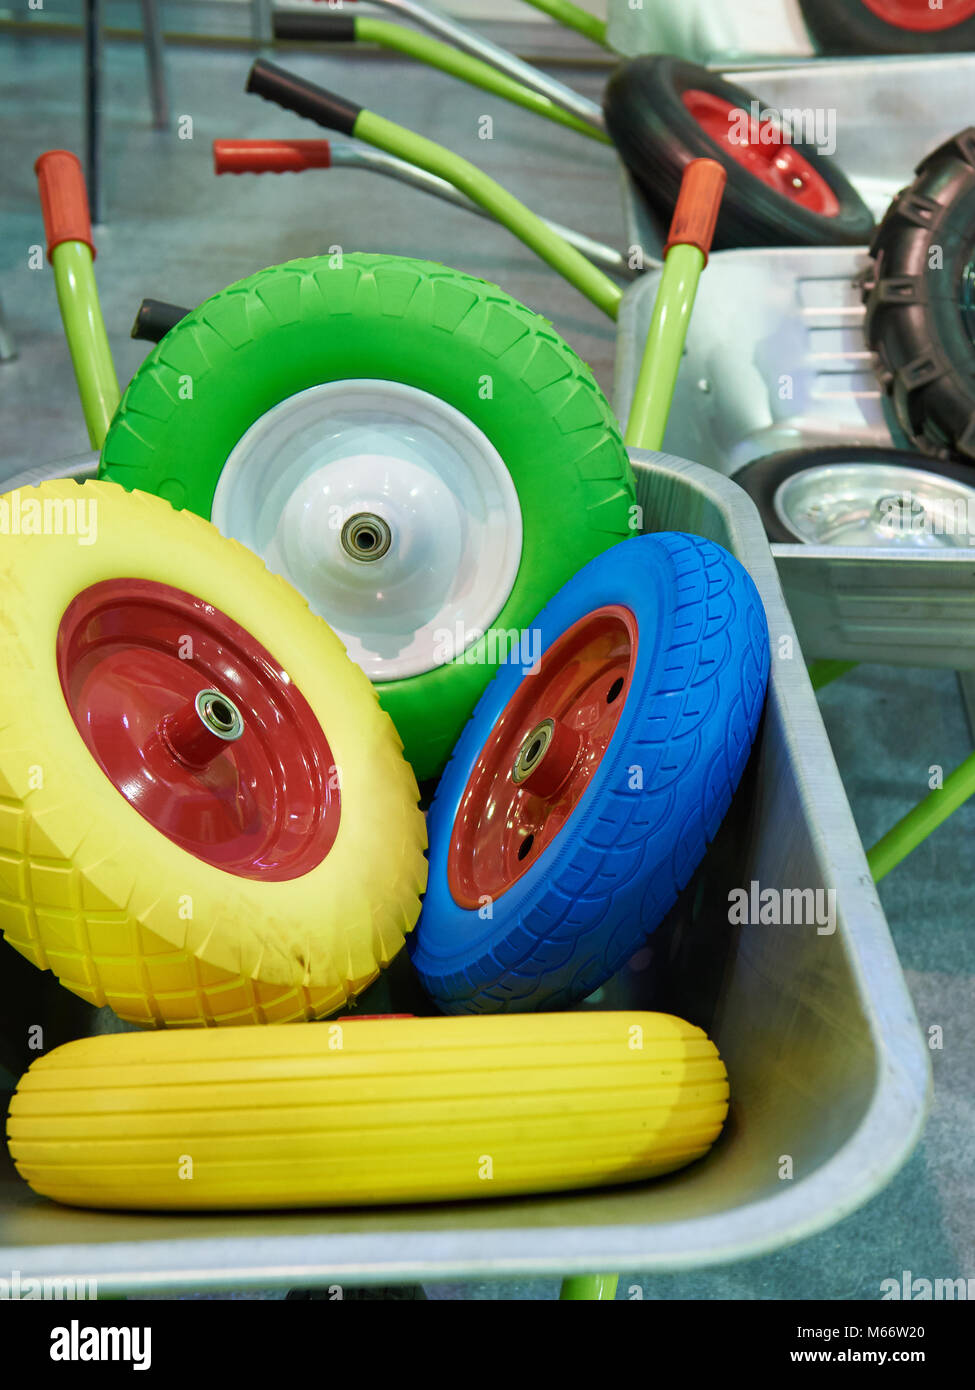 Spare wheels of garden wheelbarrows in the shop Stock Photo